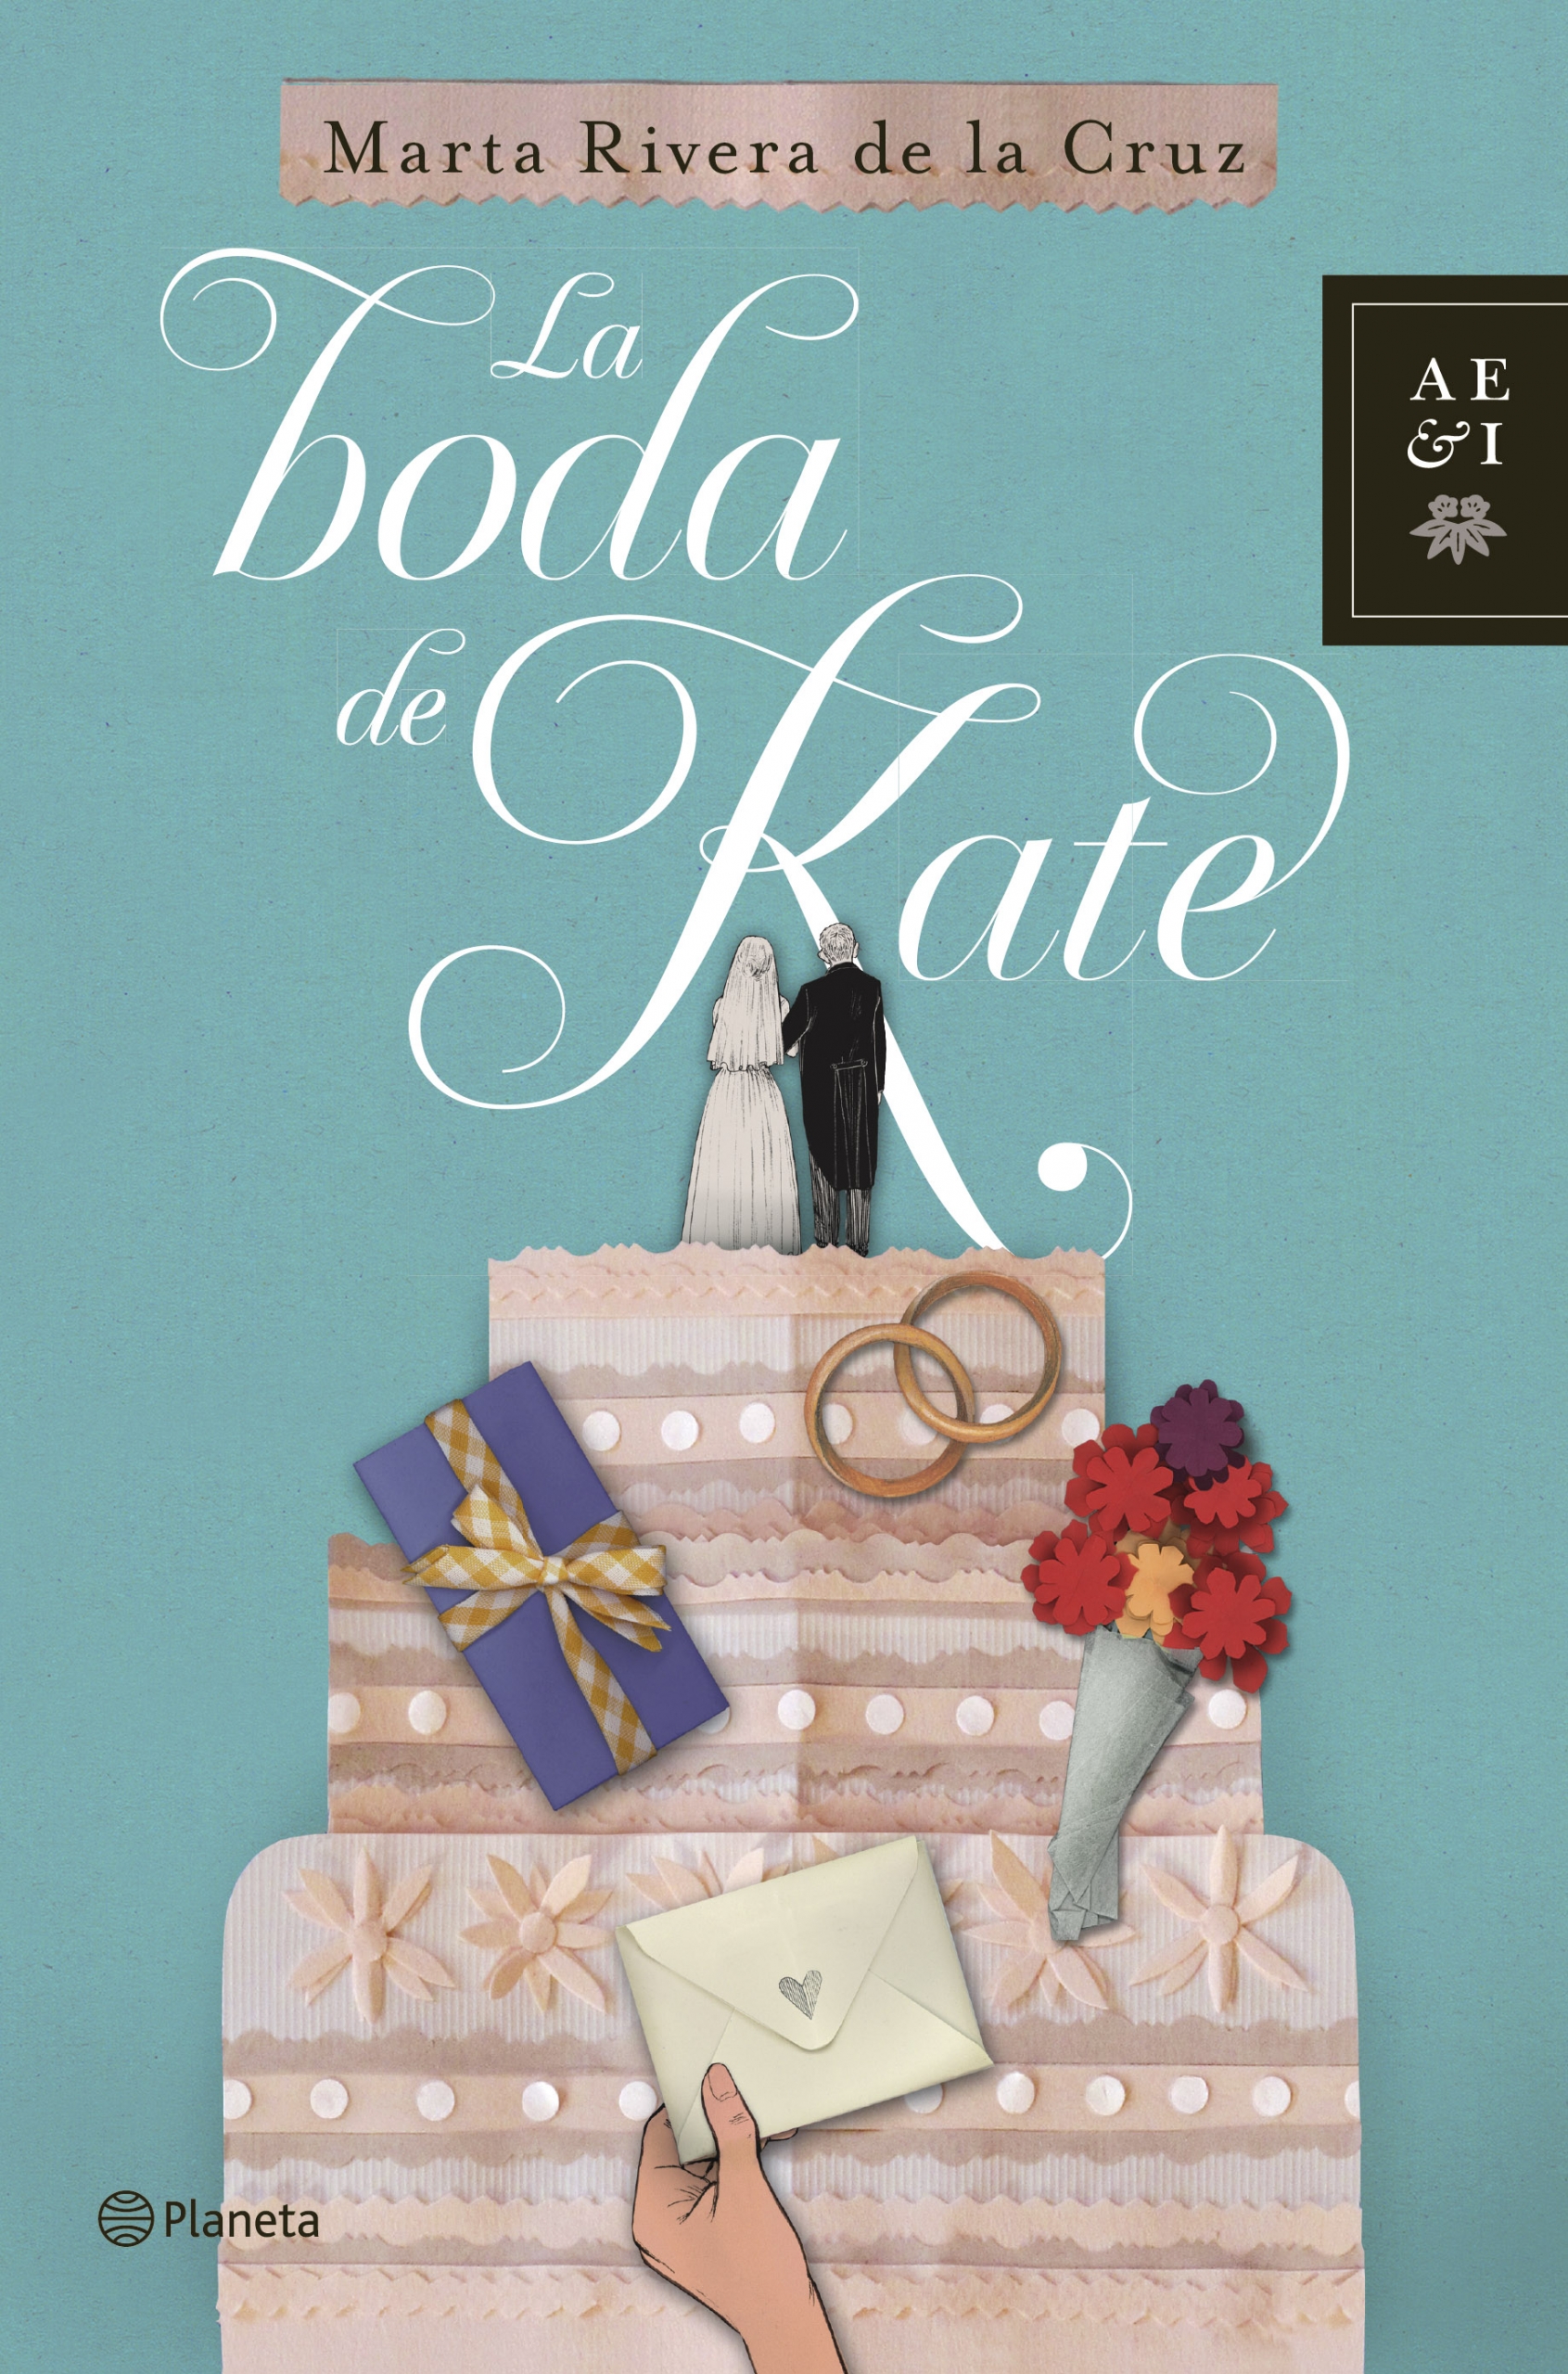 “La boda de Kate” de Marta Rivera de la Cruz